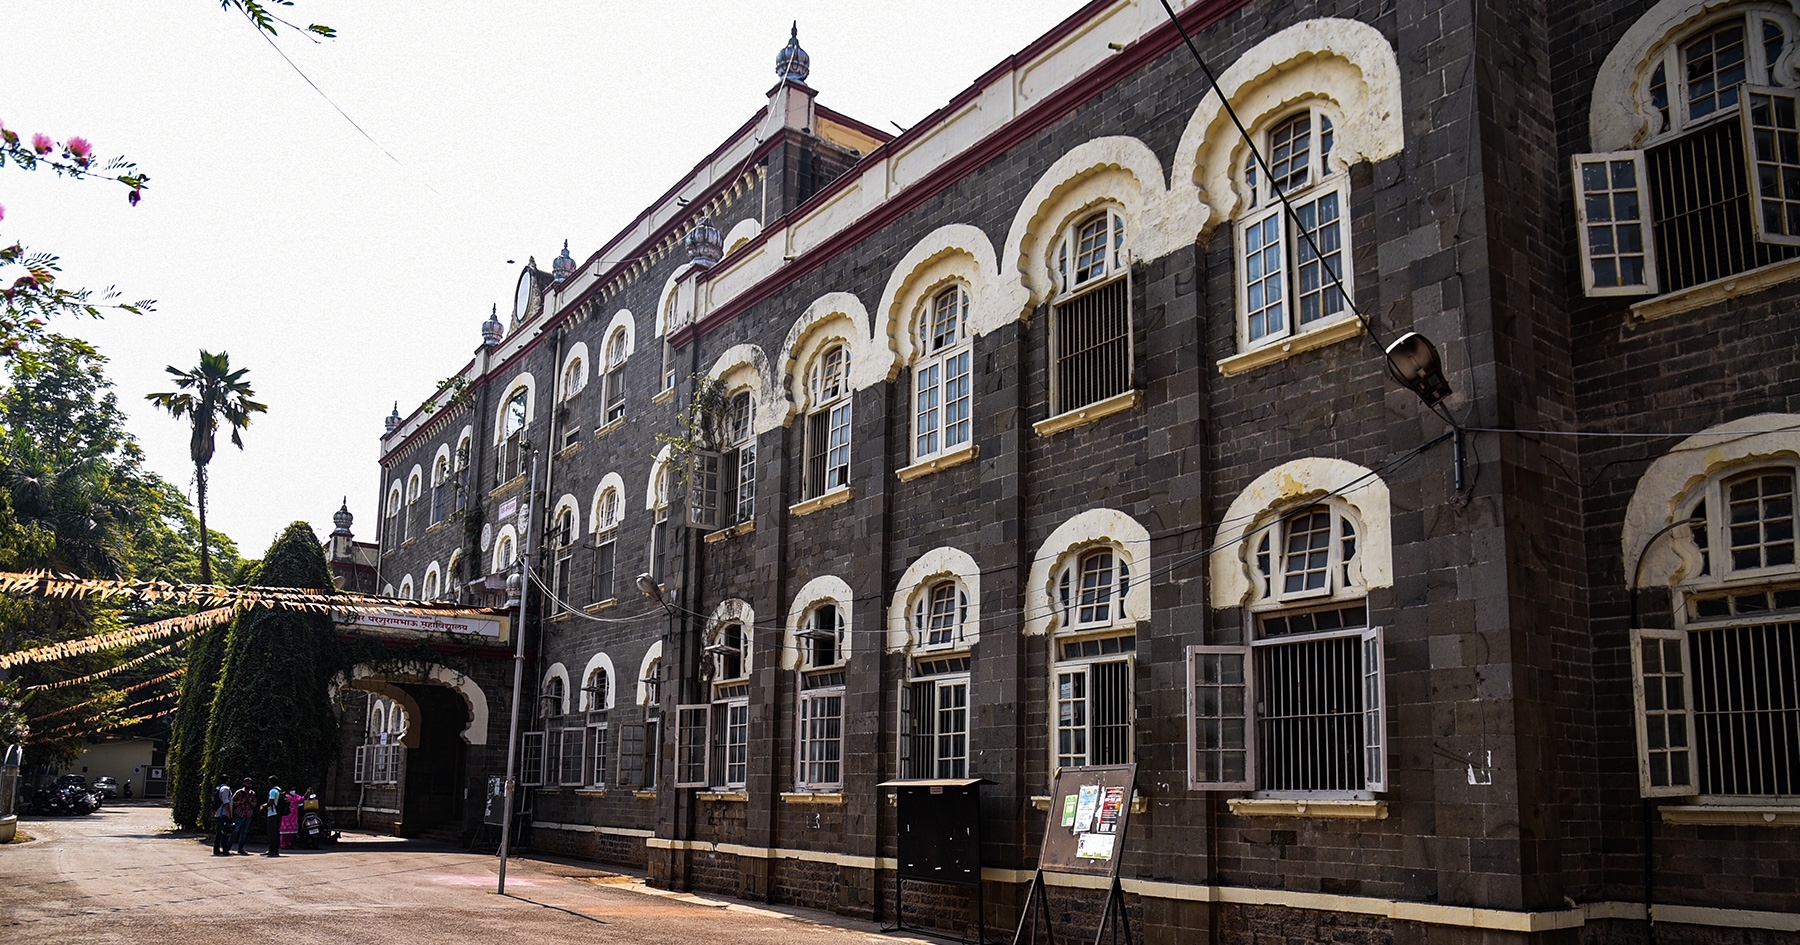 Sir Parshuram Bhau College
Pune